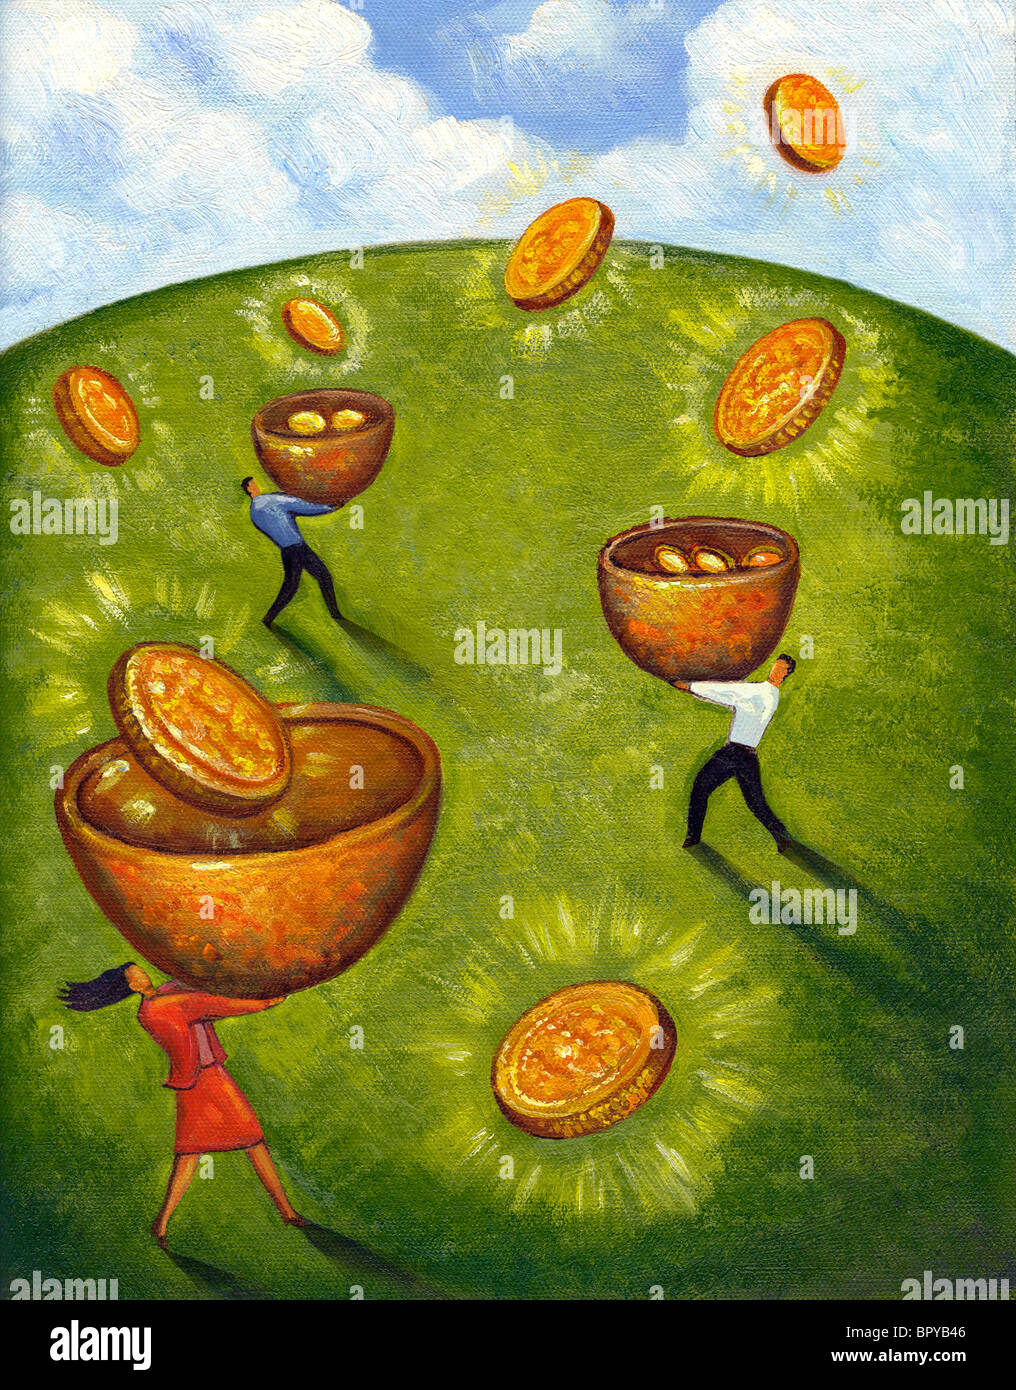 Une illustration de trois personnes attraper des pièces d'or dans des paniers Banque D'Images